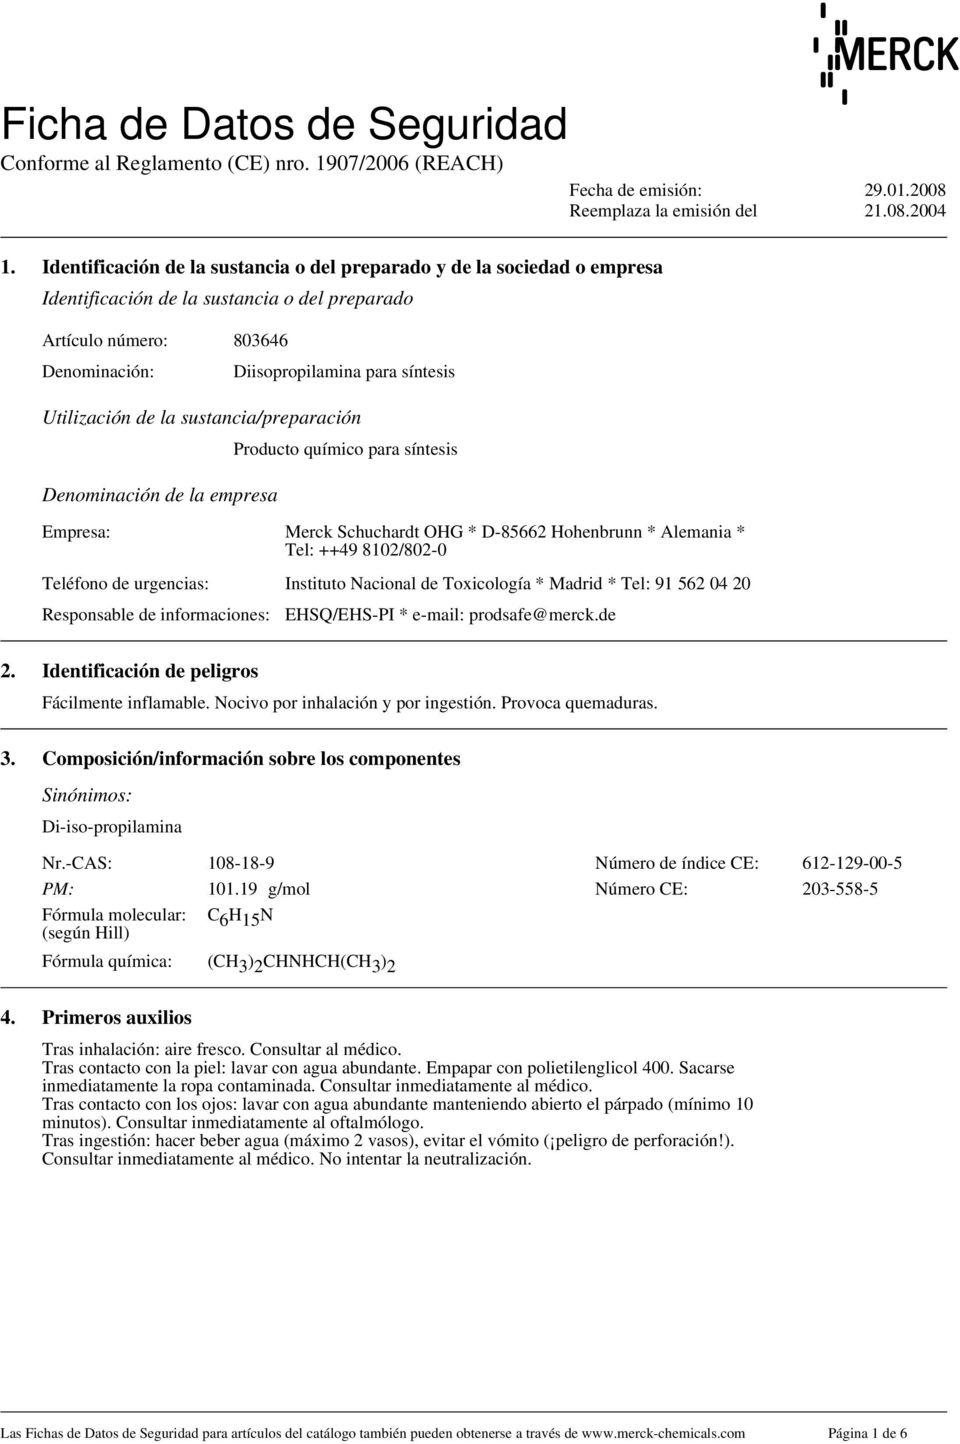 sustancia/preparación Producto químico para síntesis Denominación de la empresa Empresa: Merck Schuchardt OHG * D-85662 Hohenbrunn * Alemania * Tel: ++49 8102/802-0 Teléfono de urgencias: Instituto